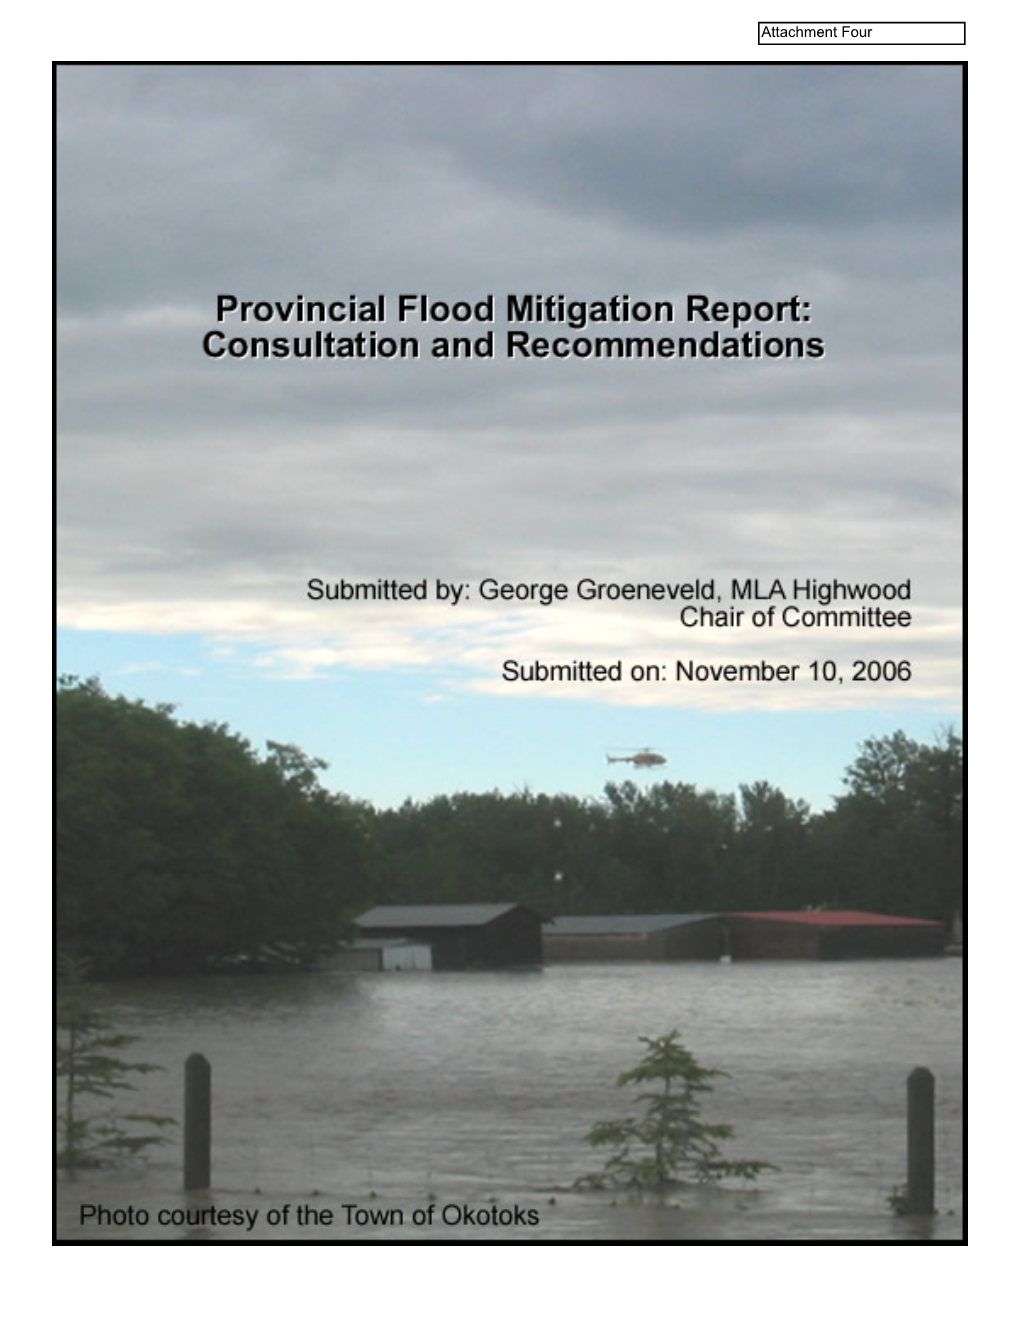 Flood Mitigation Report November 2006